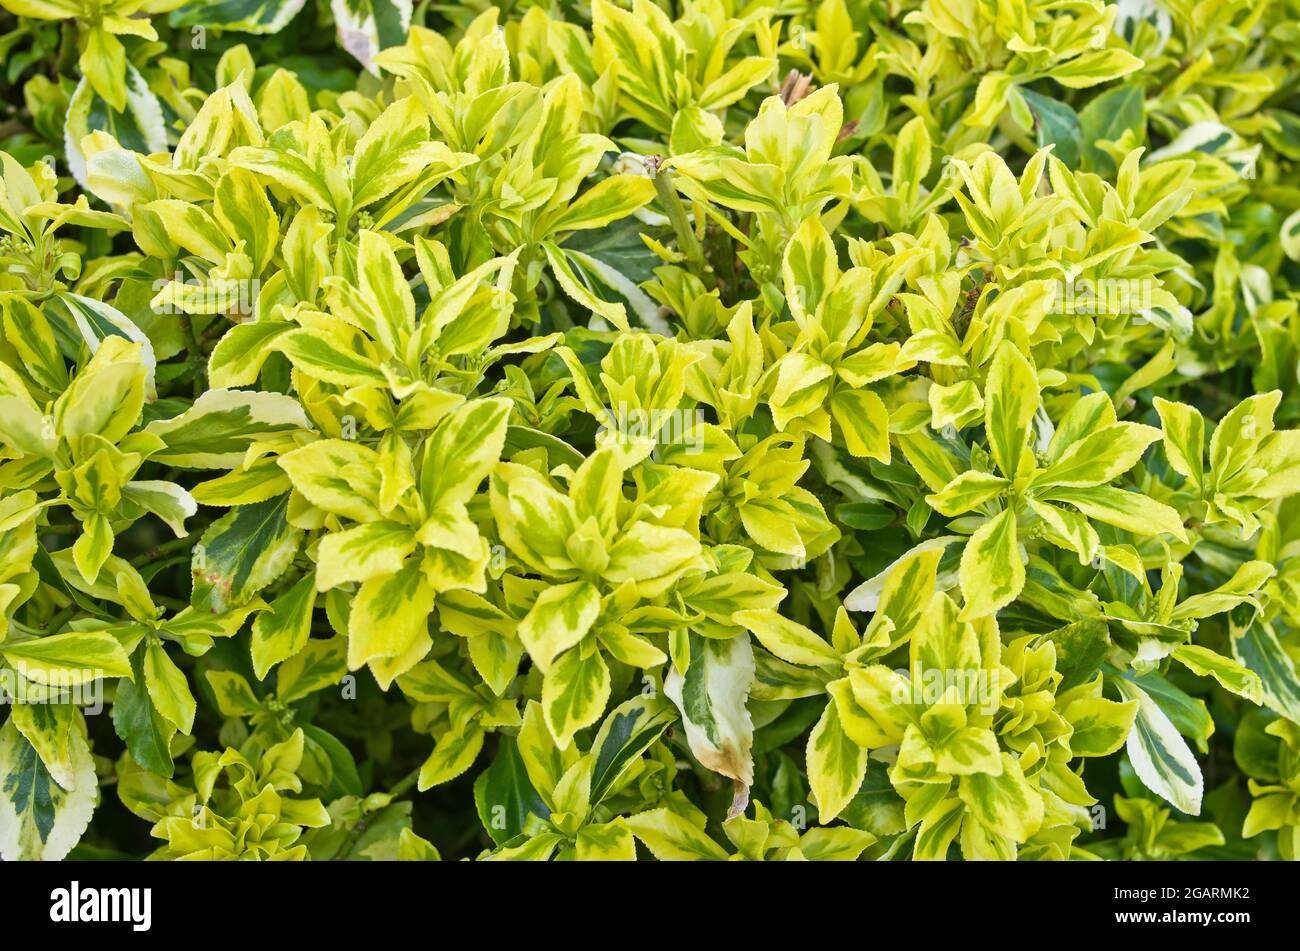 Nahaufnahme des sich entfaltenden gelben und grün gefärbten Laubs im Frühfrühling auf dem immergrünen Euonymus fortunei-Strauch, April, England Stockfoto